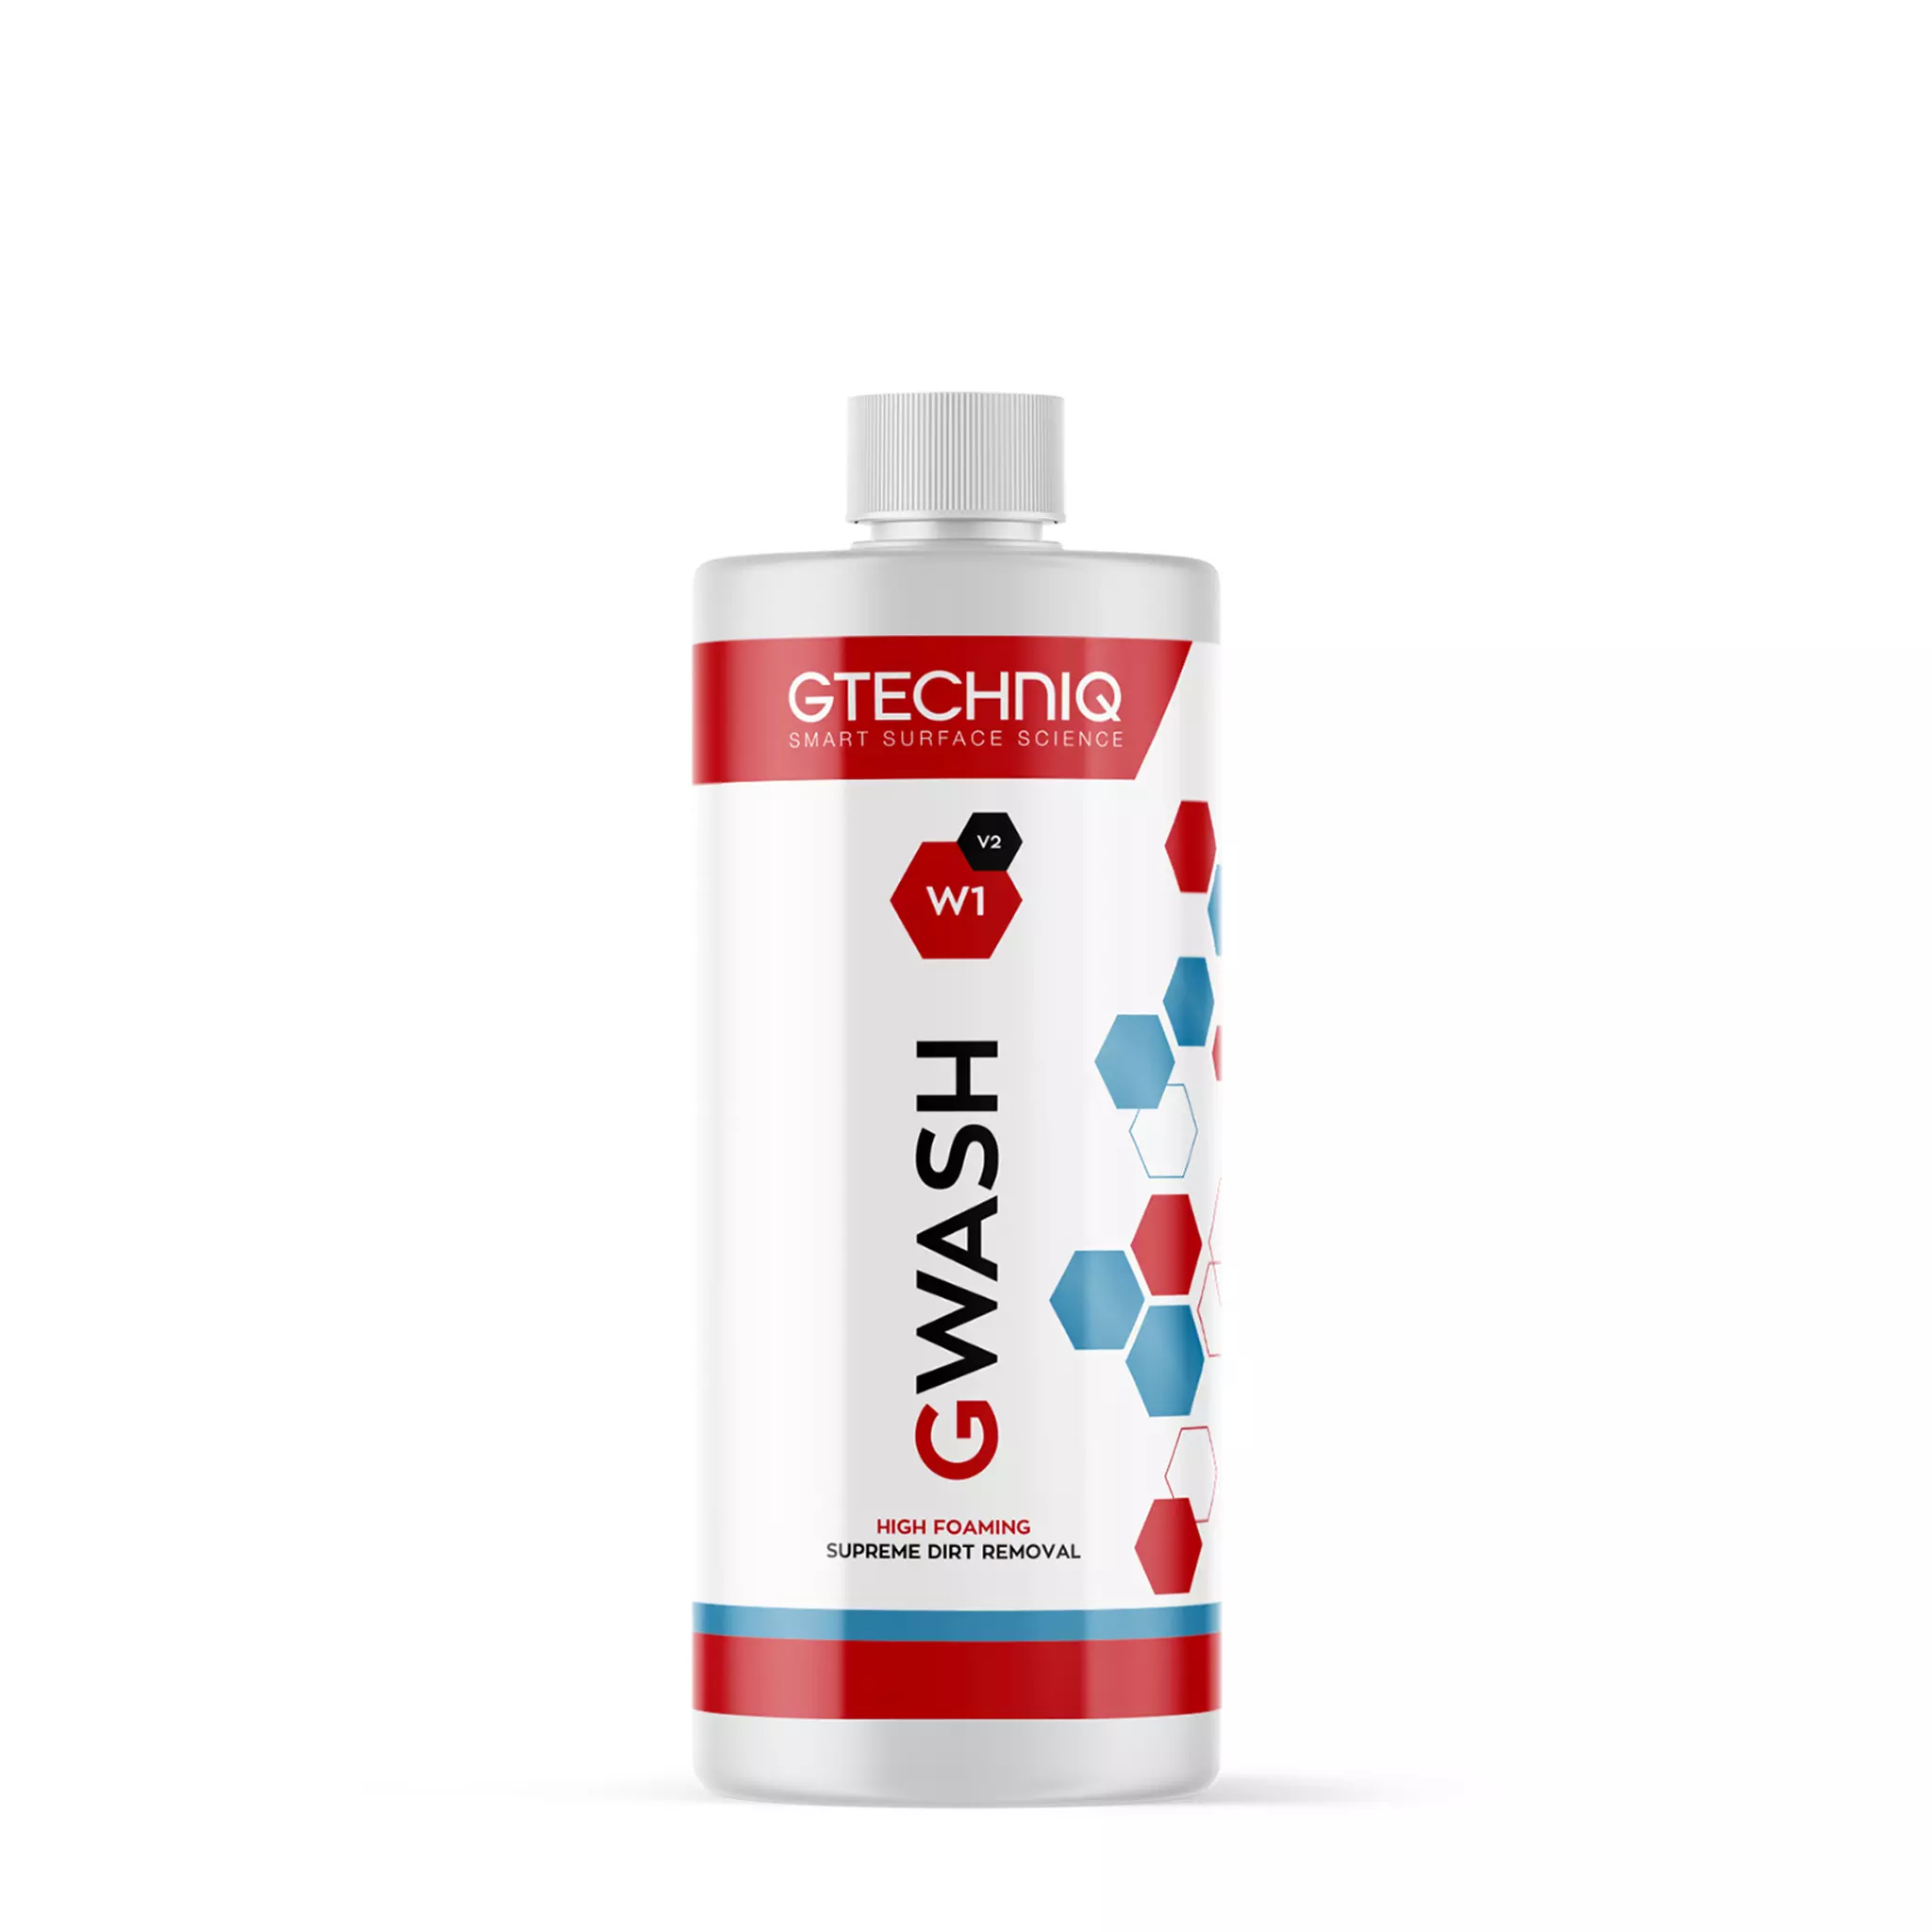 Autoshampoo Gtechniq W1 Gwash V2, 1000